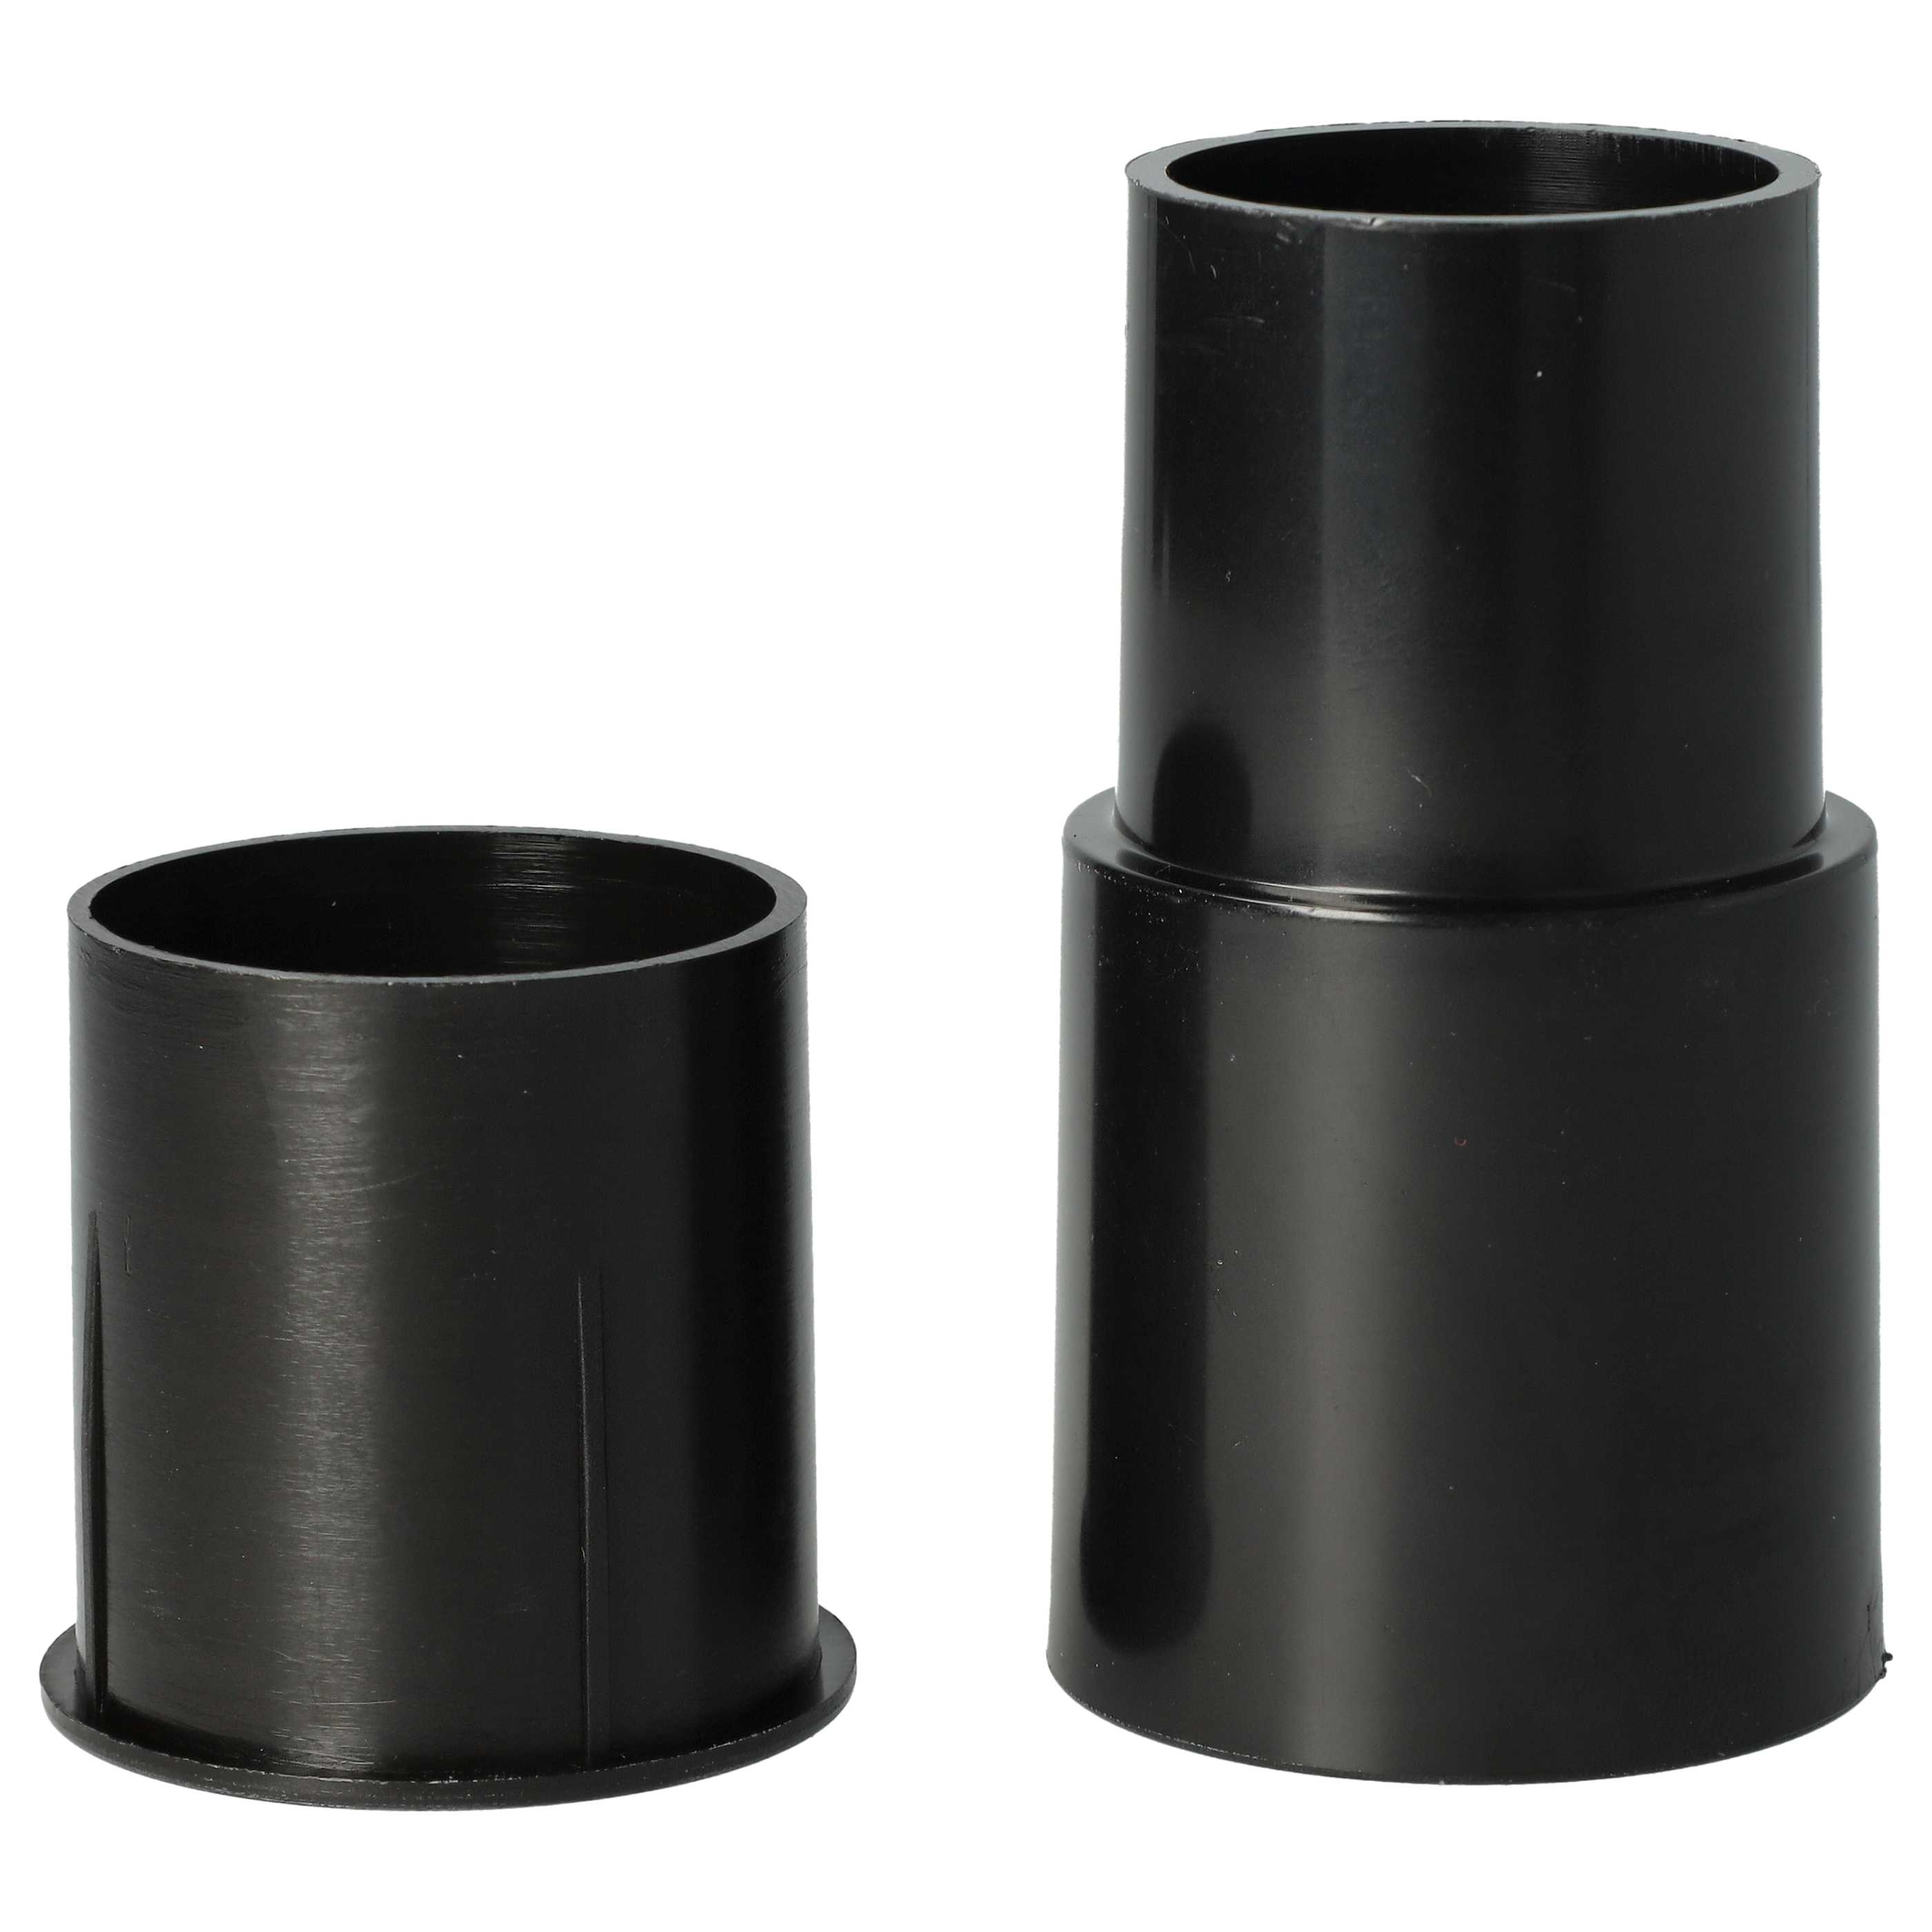 2x Adapter passend für diverse Staubsauger wie AEG, Philips u.v.m. - ⌀ 32 auf 35 mm, schwarz